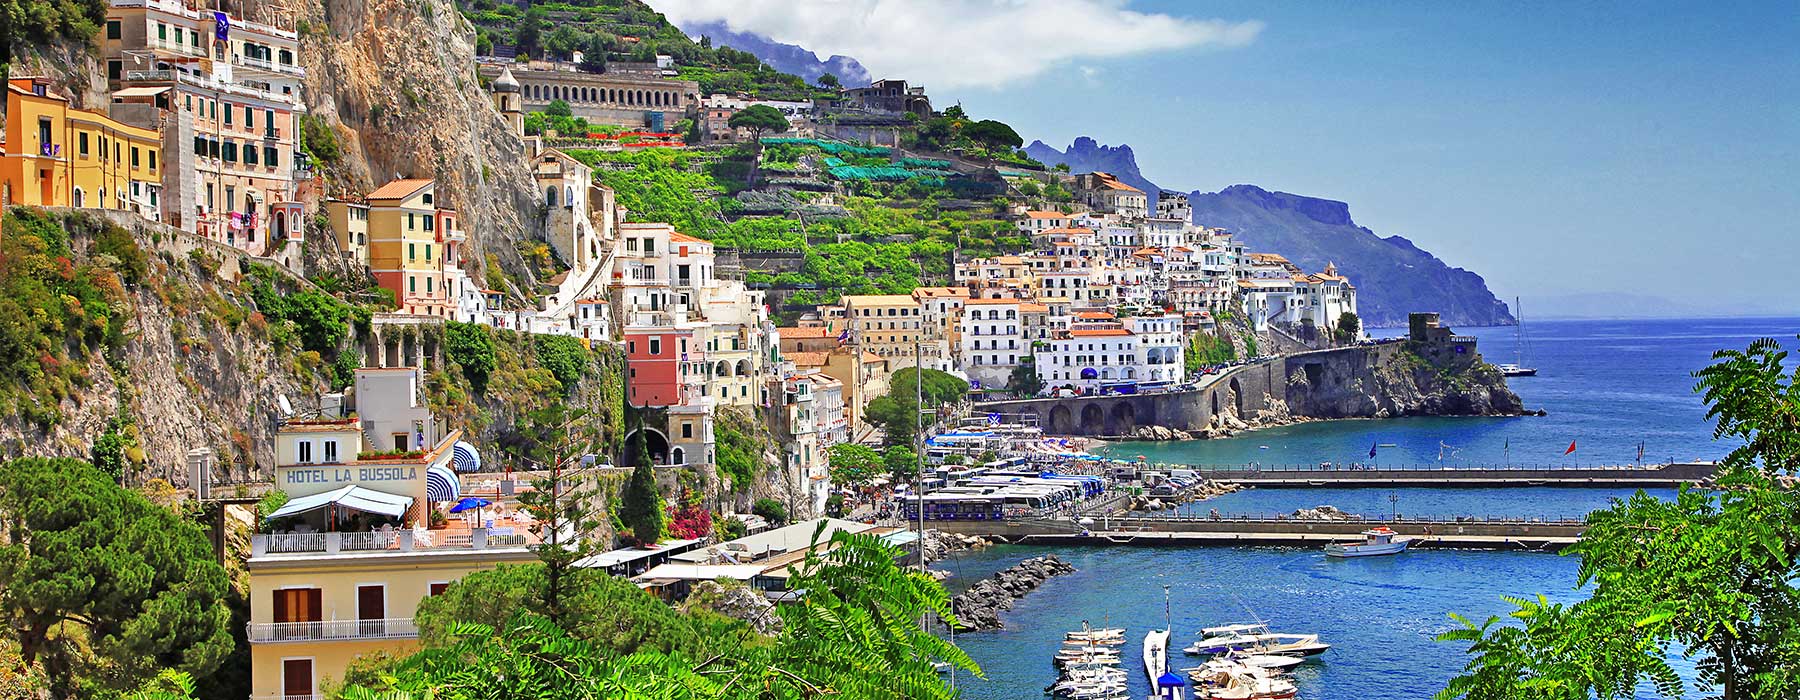 Top-10 rejsemål i Italien